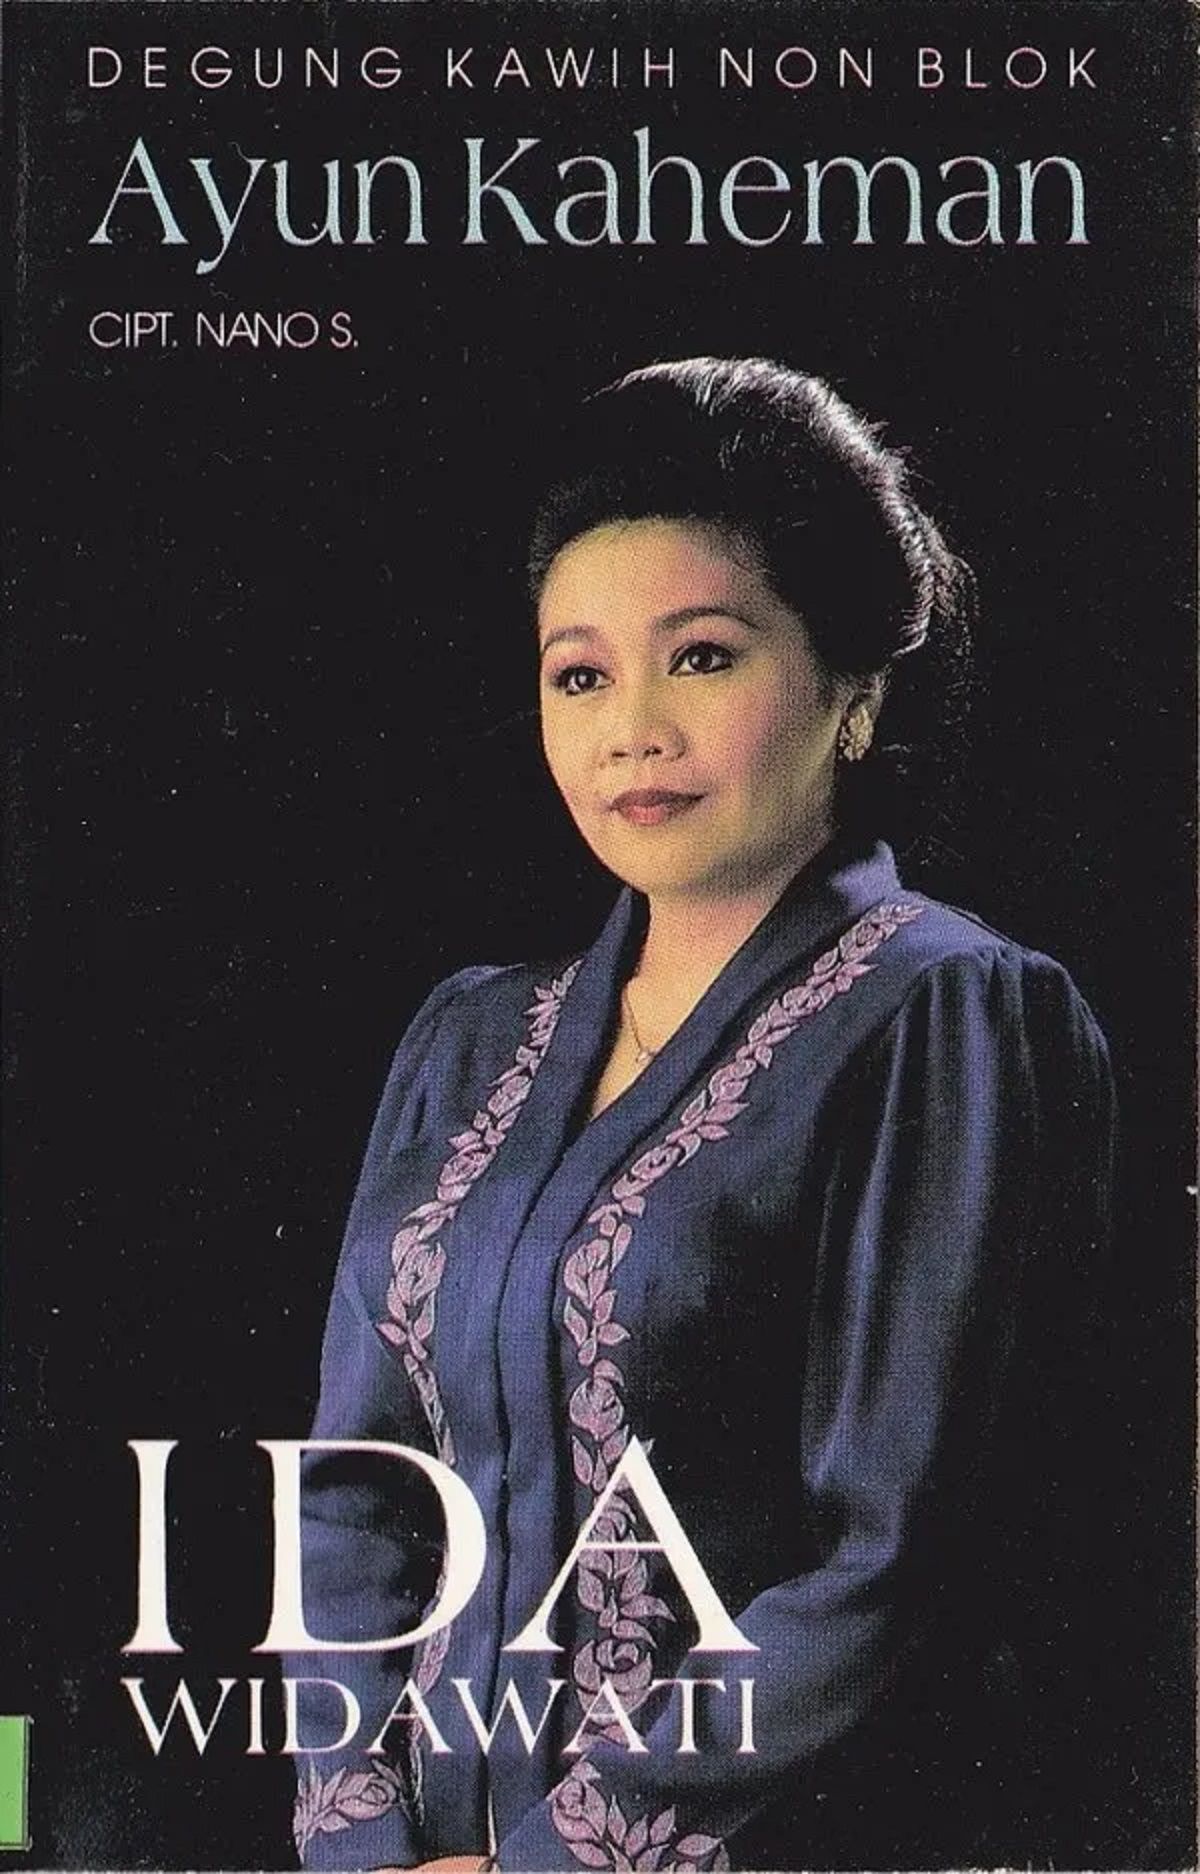 Album 'Ayun kaheman' Ida Widawati (1996).*